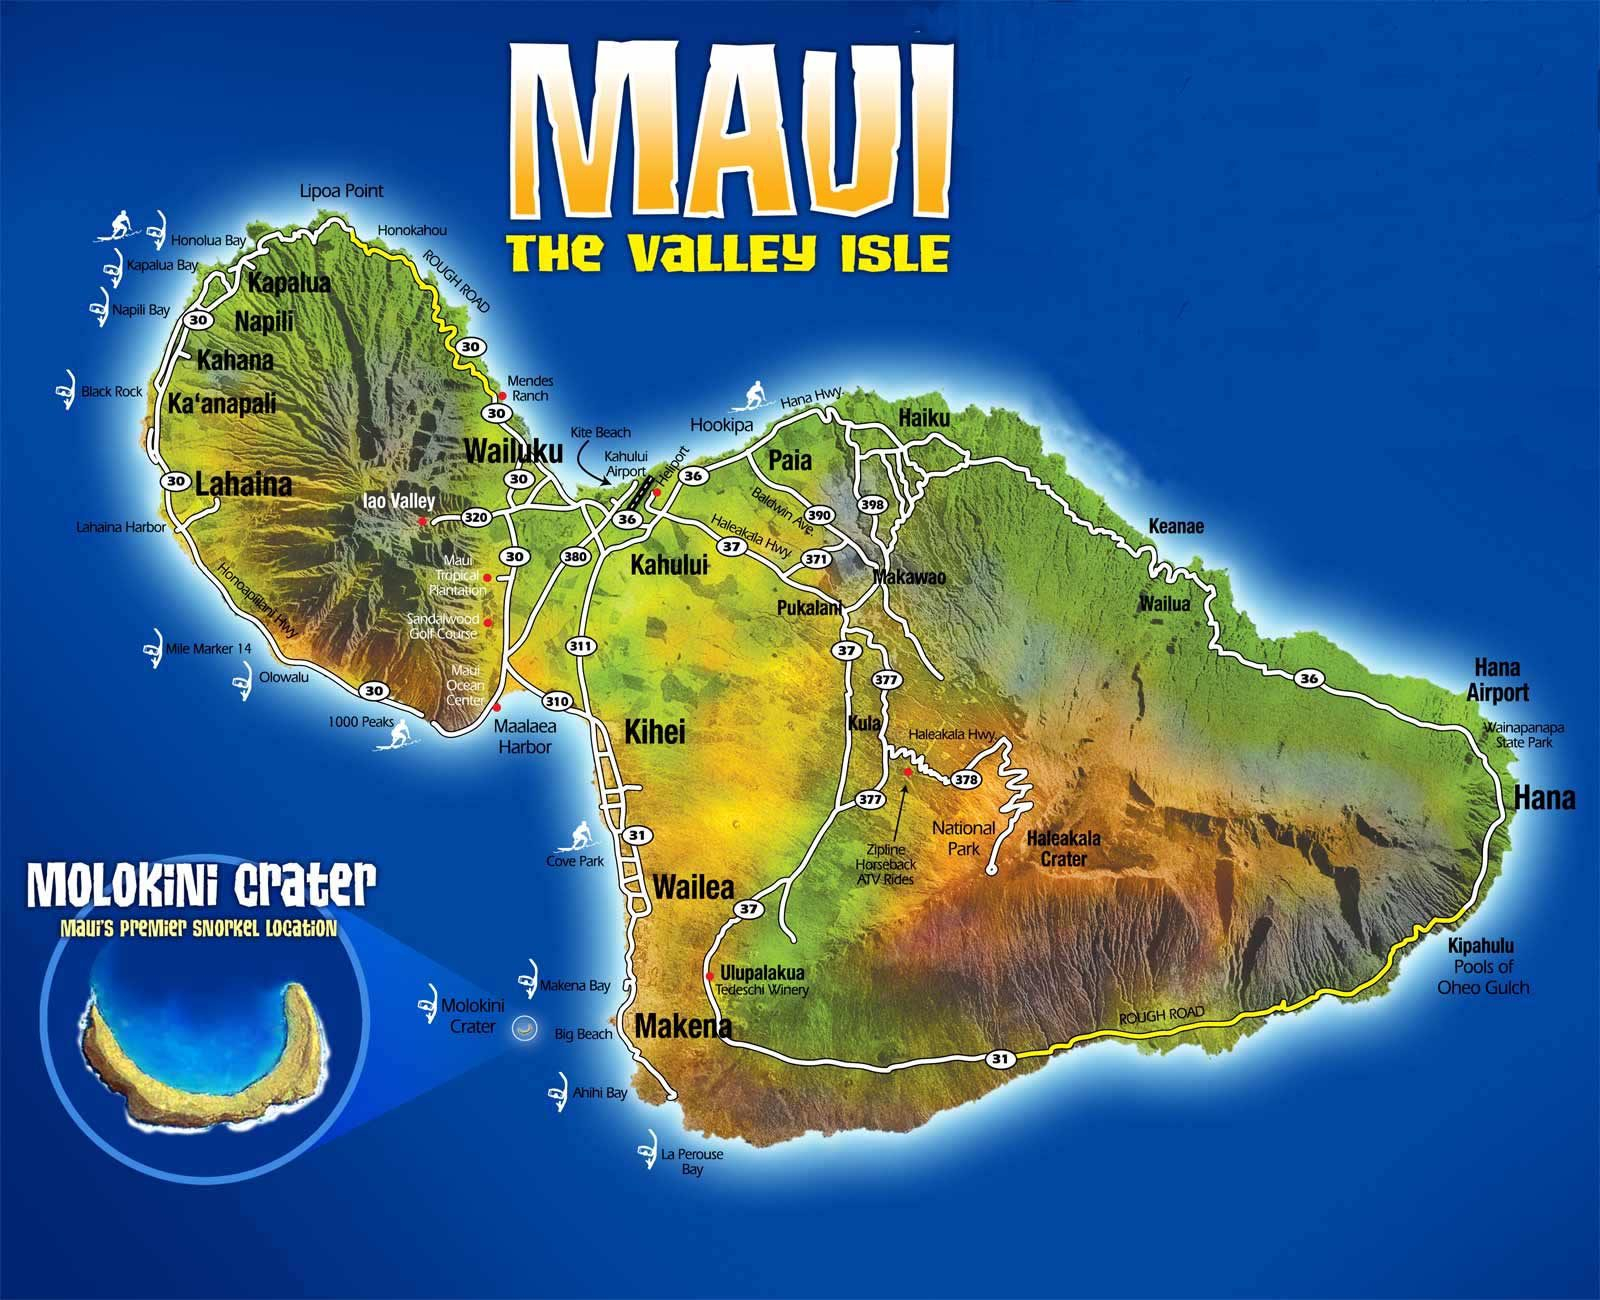 Download Free Maps Of Maui Hawaii Car Rental Maui